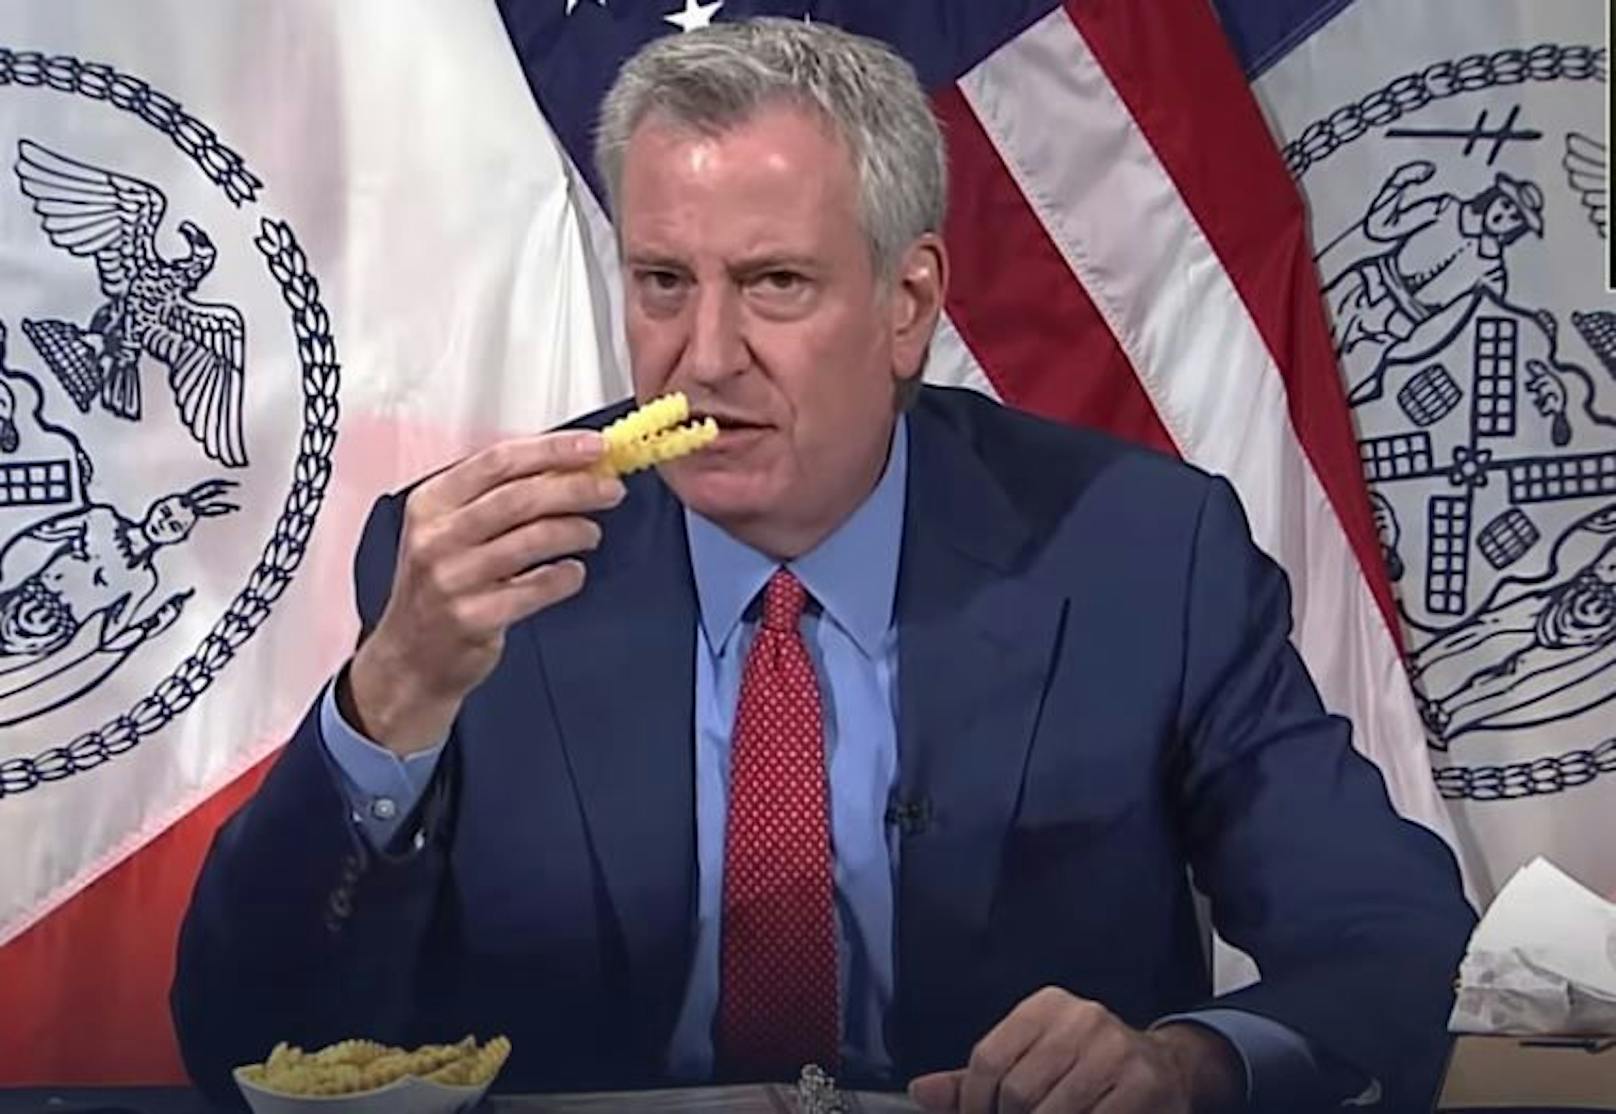 Gratis Essen im Fast Food-Restaurant: Im Mai aß New Yorks Bürgermeister Bill de Blasio während einer <a href="https://www.youtube.com/watch?v=E2yXwUm5TNs" target="_blank">virtuellen Pressekonferenz</a> eine Portion Pommes. Er warb so für eine Fast-Food-Kette, die Gratispommes und -hamburger für nachweislich Geimpfte ausgab.